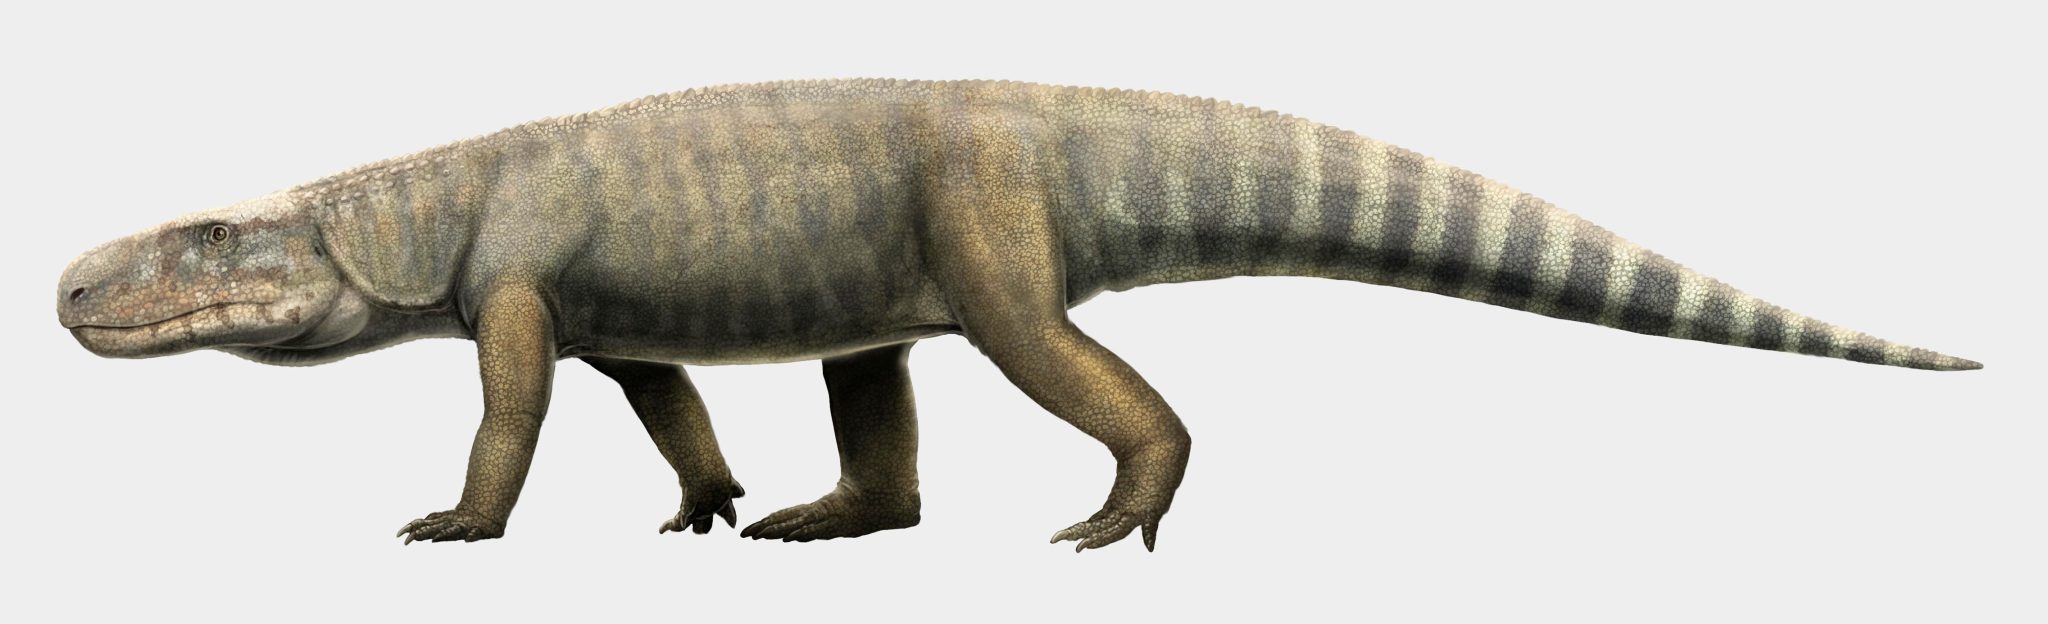 鳄鱼进化缺失环节：坦桑尼亚发现的三叠纪古龙化石确认为独立物种Mambawakale ruhuhu